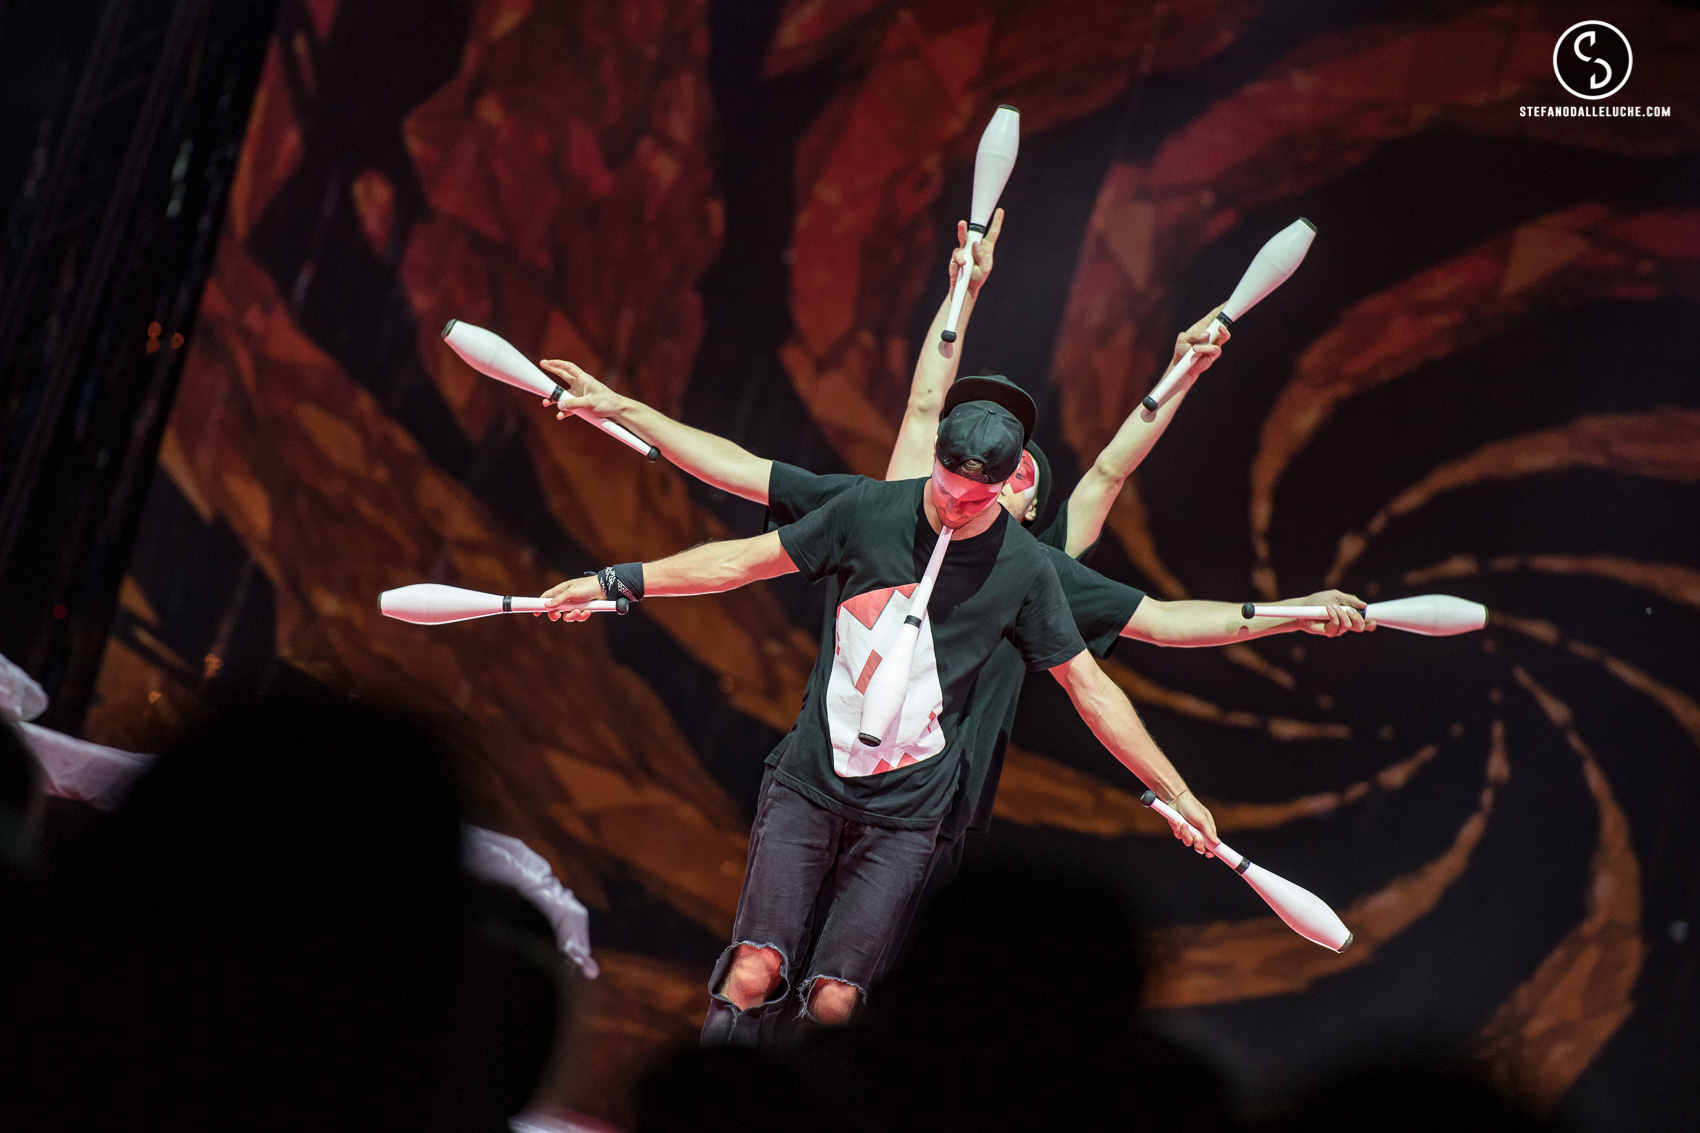 Le Cirque con i migliori performers del mondo. Le immagini dello spettacolo alla Cittadella